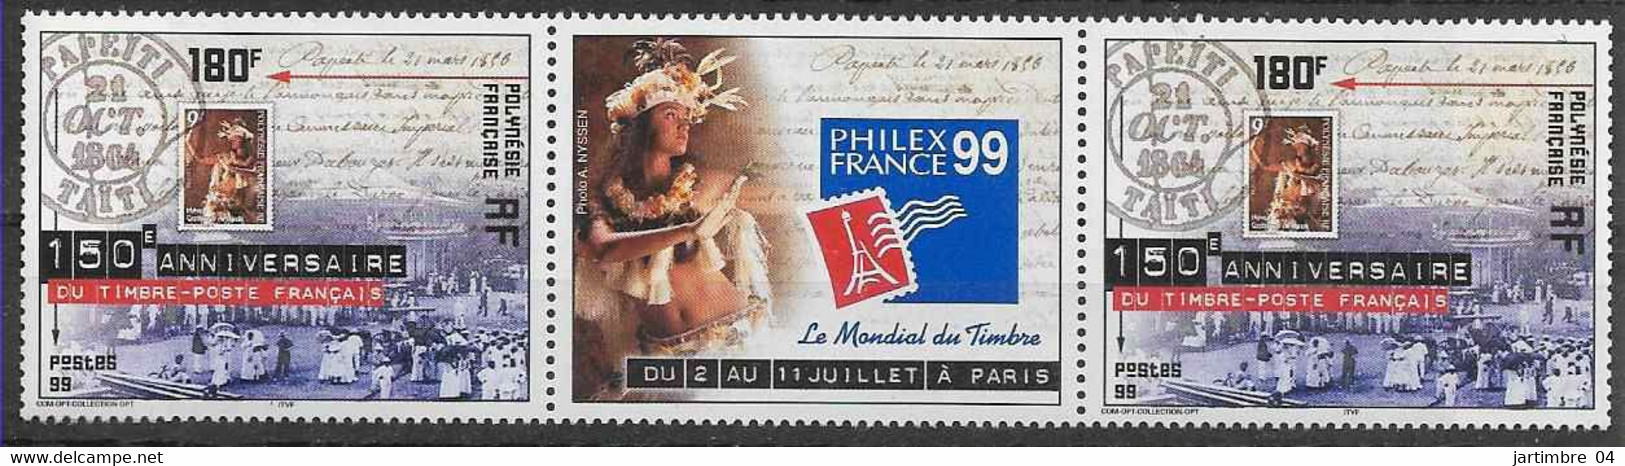 1999 POLYNESIE FRANCAISE 602** Philexfrance, Timbre Sur Timbre, Paire Avec Vignette - Ungebraucht